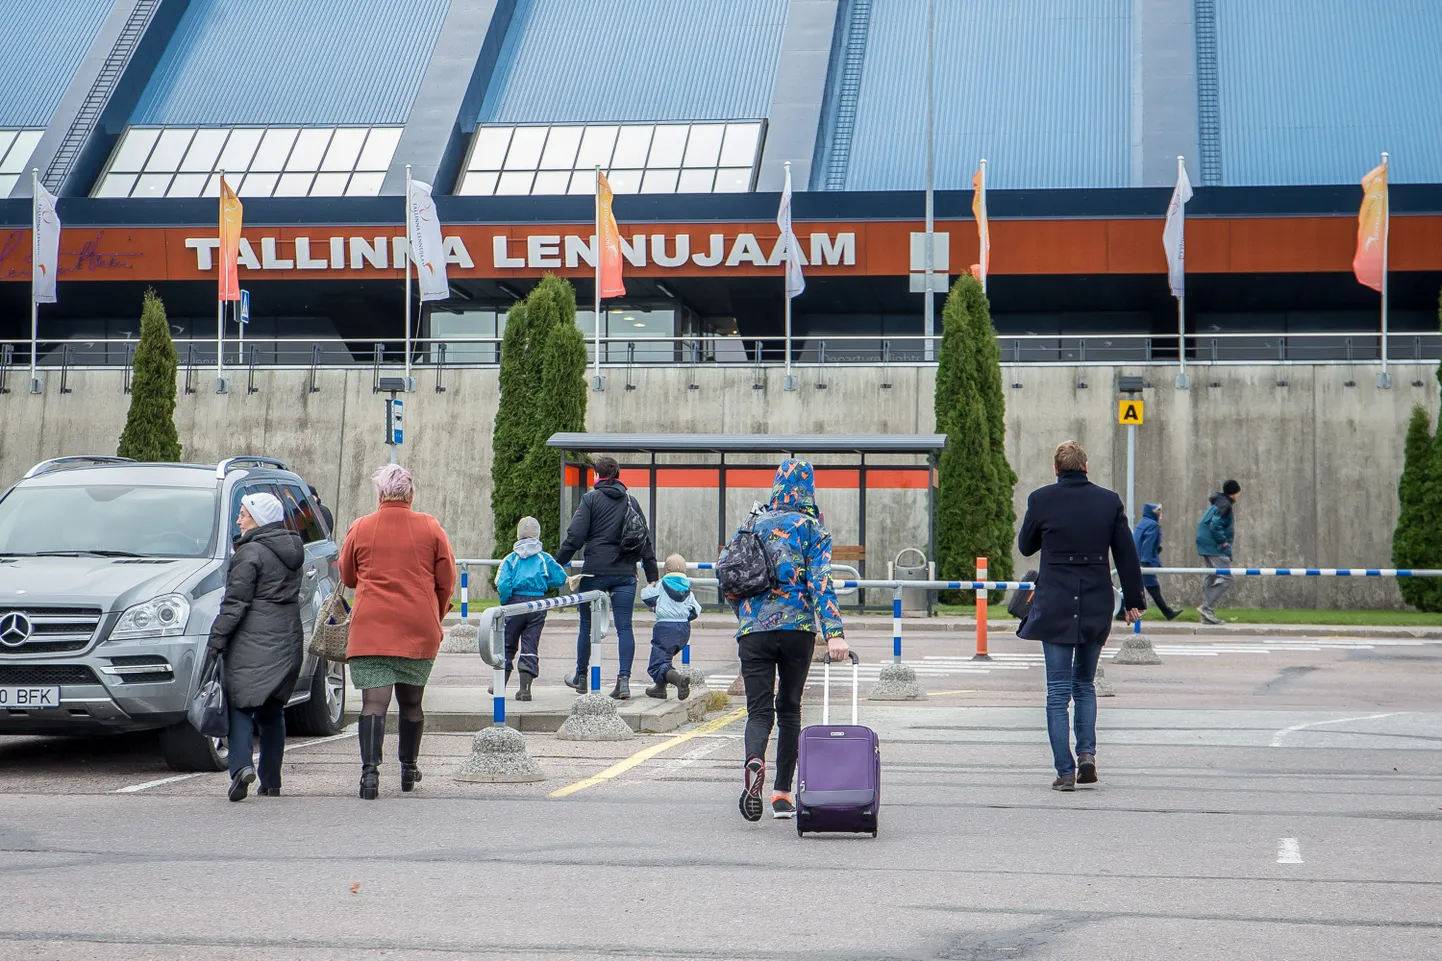 Tallinna lennujaamale tehti pommiähvardus.